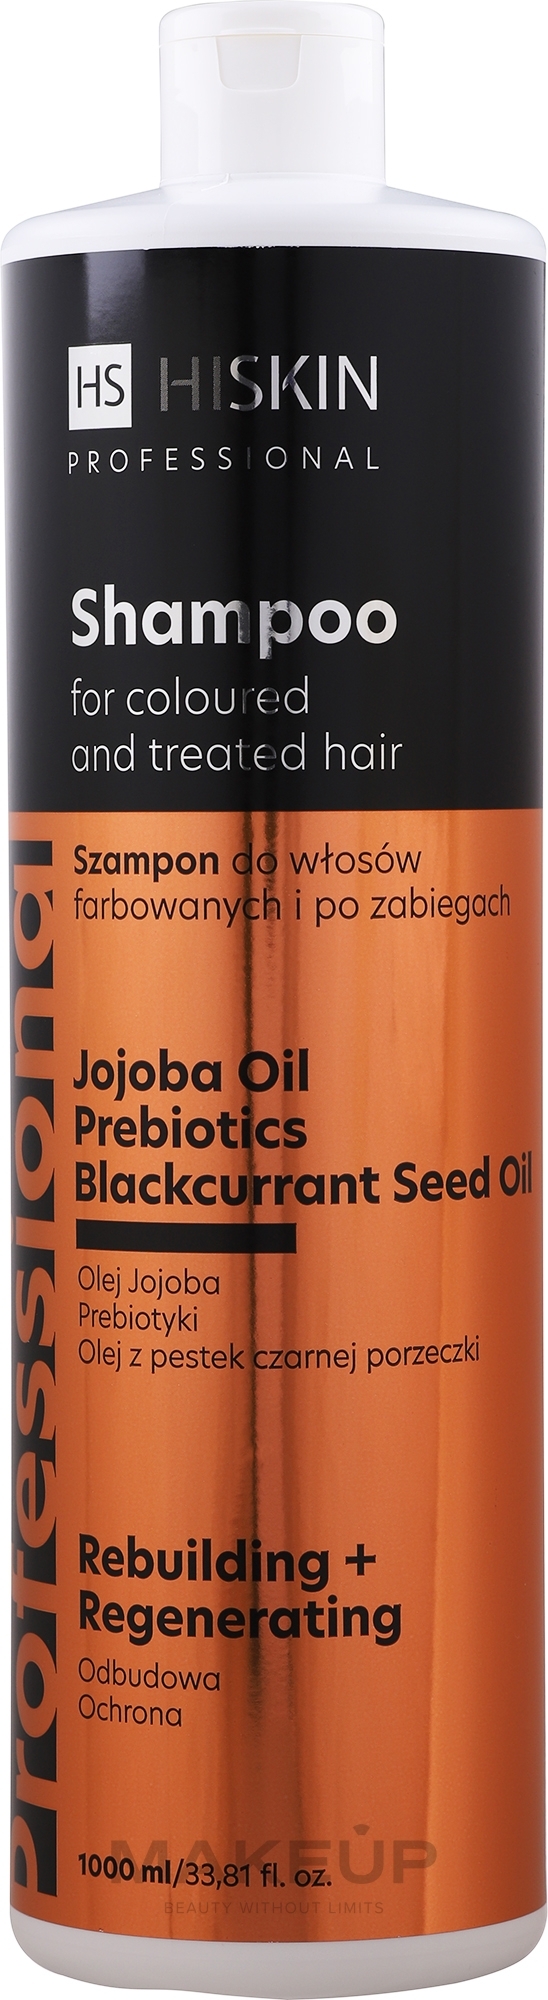 Odbudowujący szampon ochronny do włosów farbowanych i zniszczonych - HiSkin Professional Shampoo — Zdjęcie 1000 ml